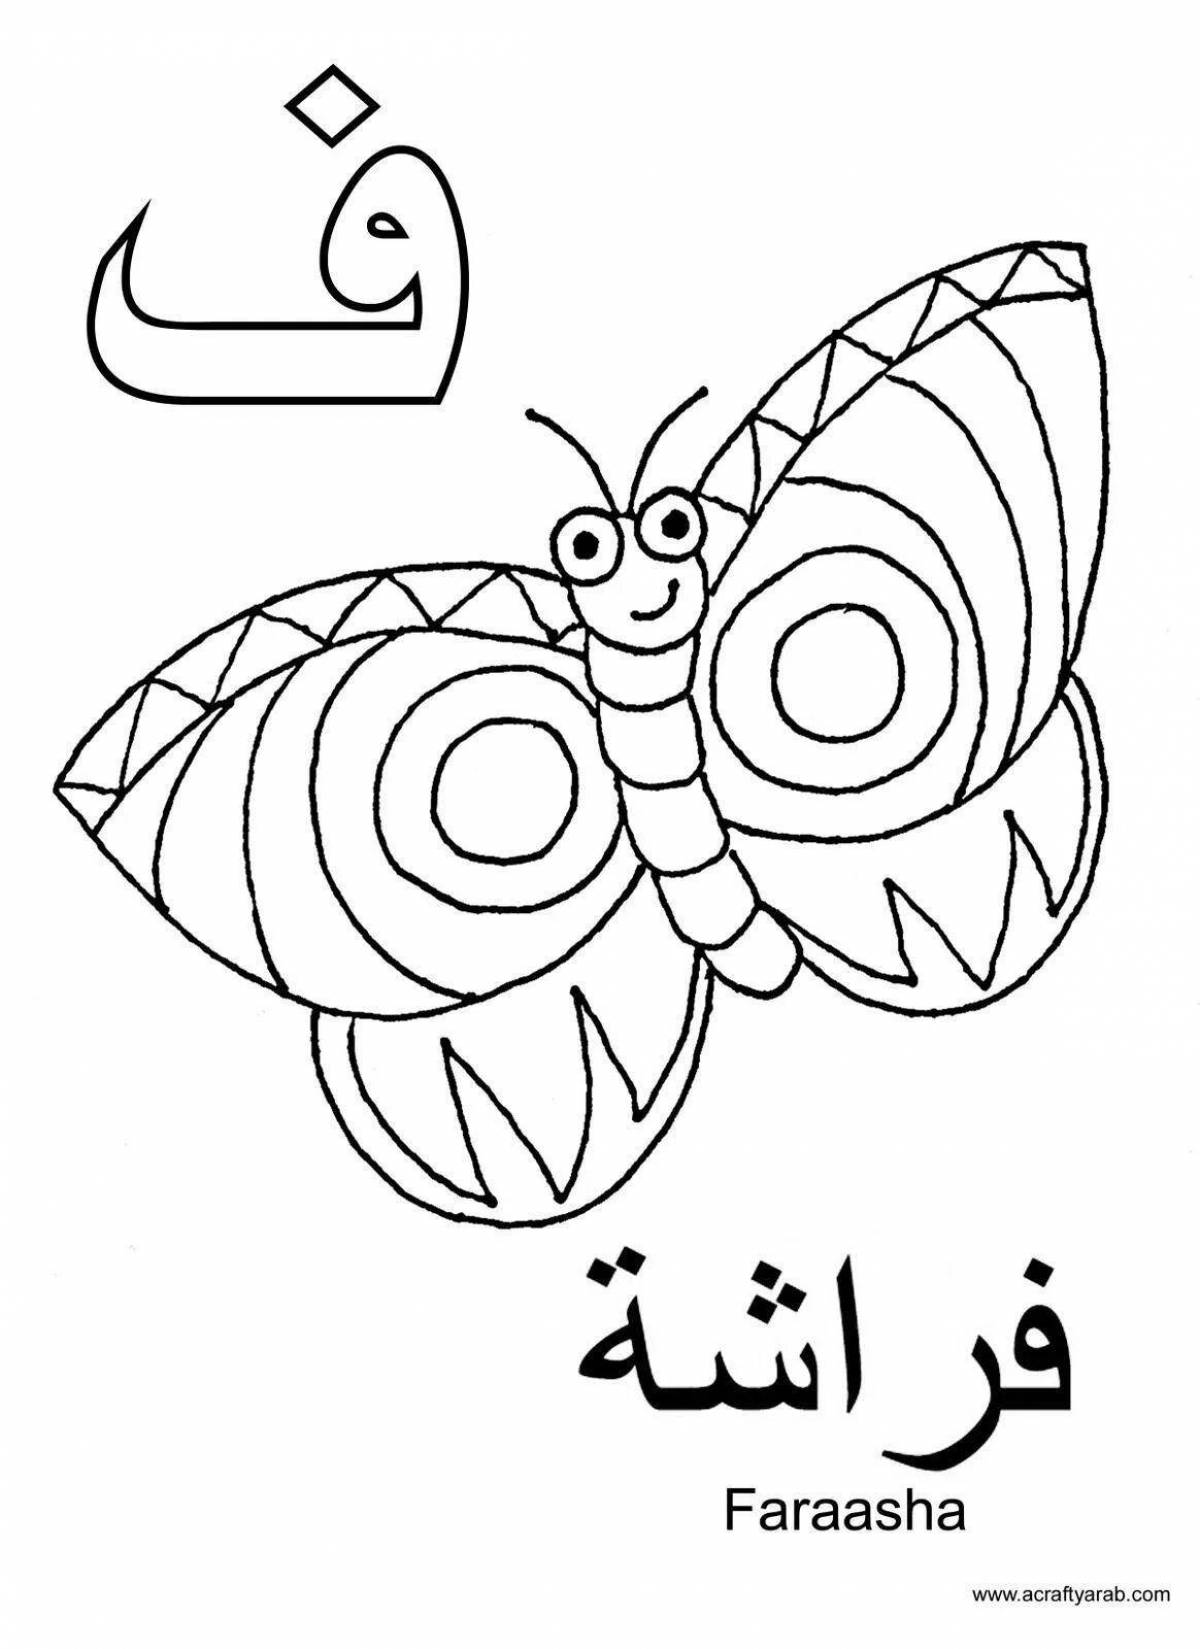 Жирная раскраска арабскими буквами